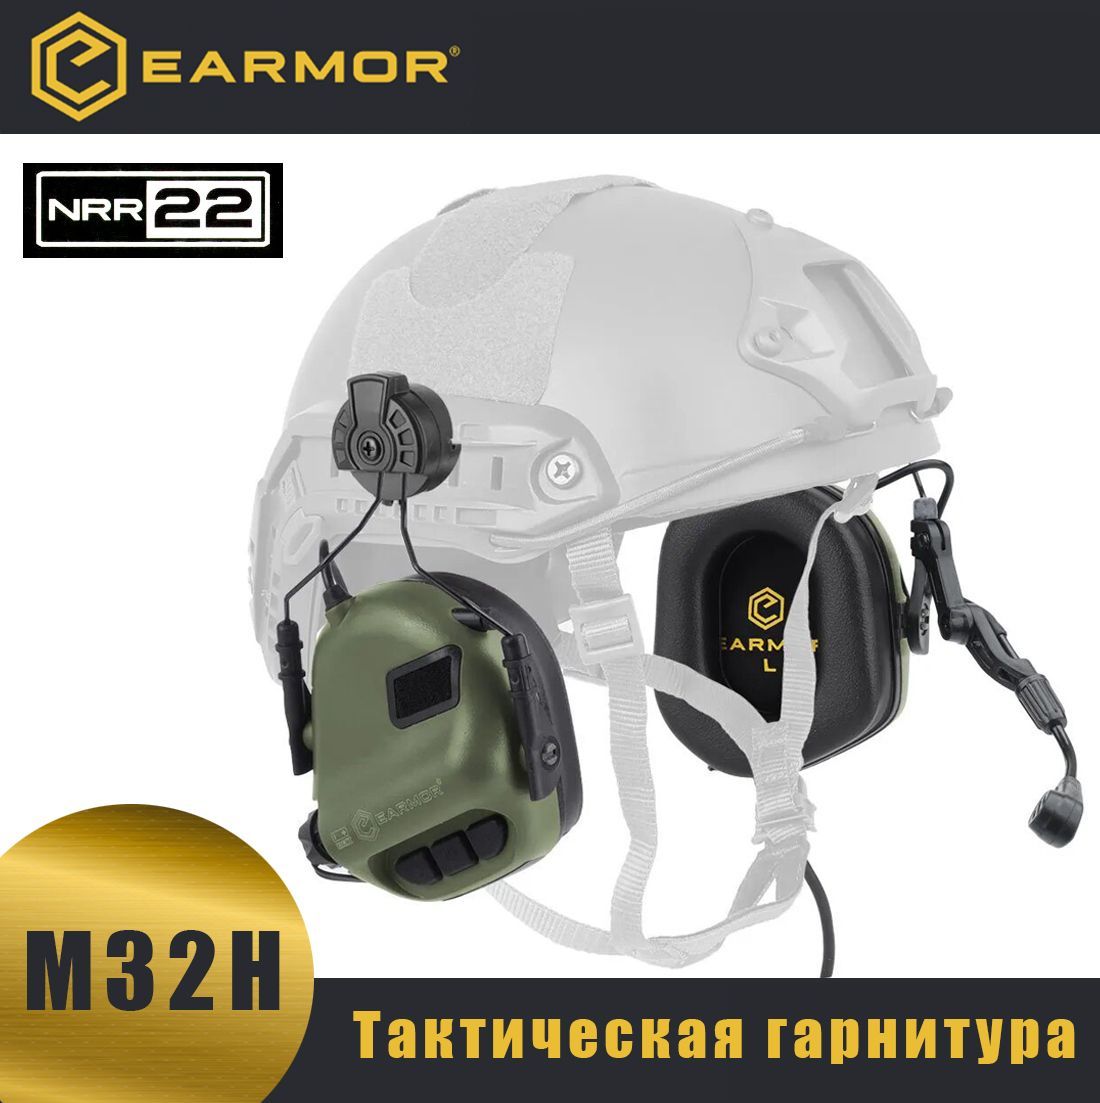 Тактический шлем с наушниками. Earmor m32h. Активные наушники Earmor. Активные наушники m32. Earmor 32.